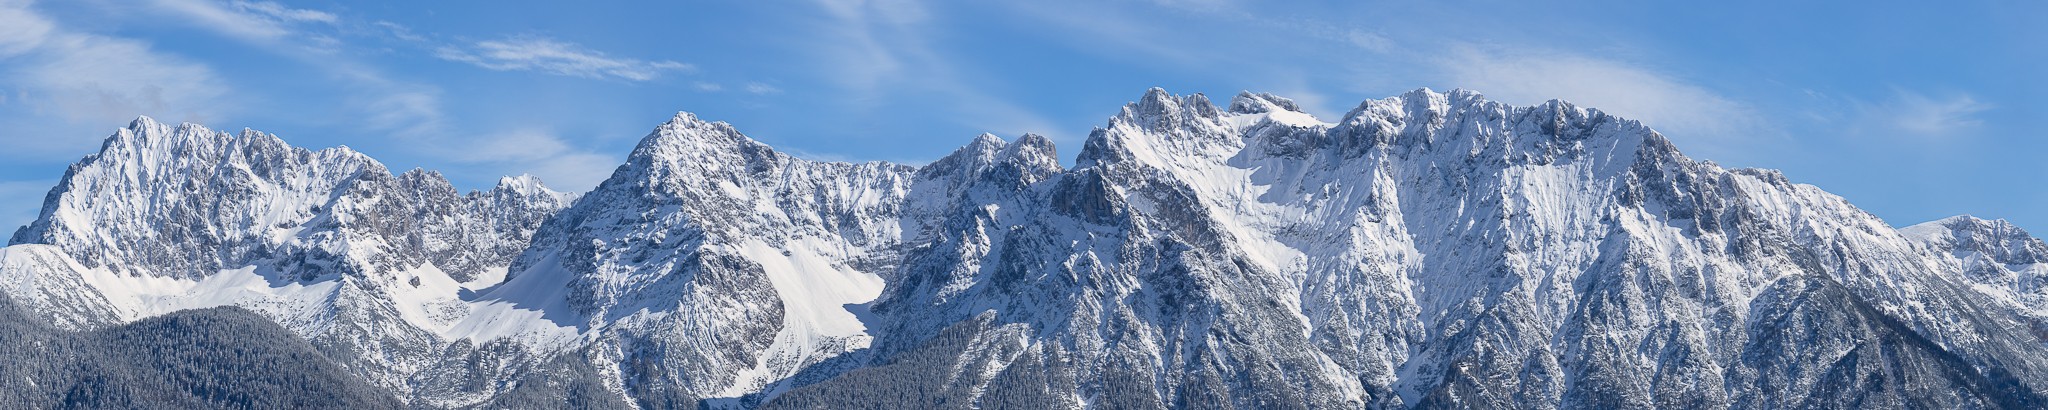 Karwendel im Winter. Bergpanorama der Mittenwalder Karwendelkette.